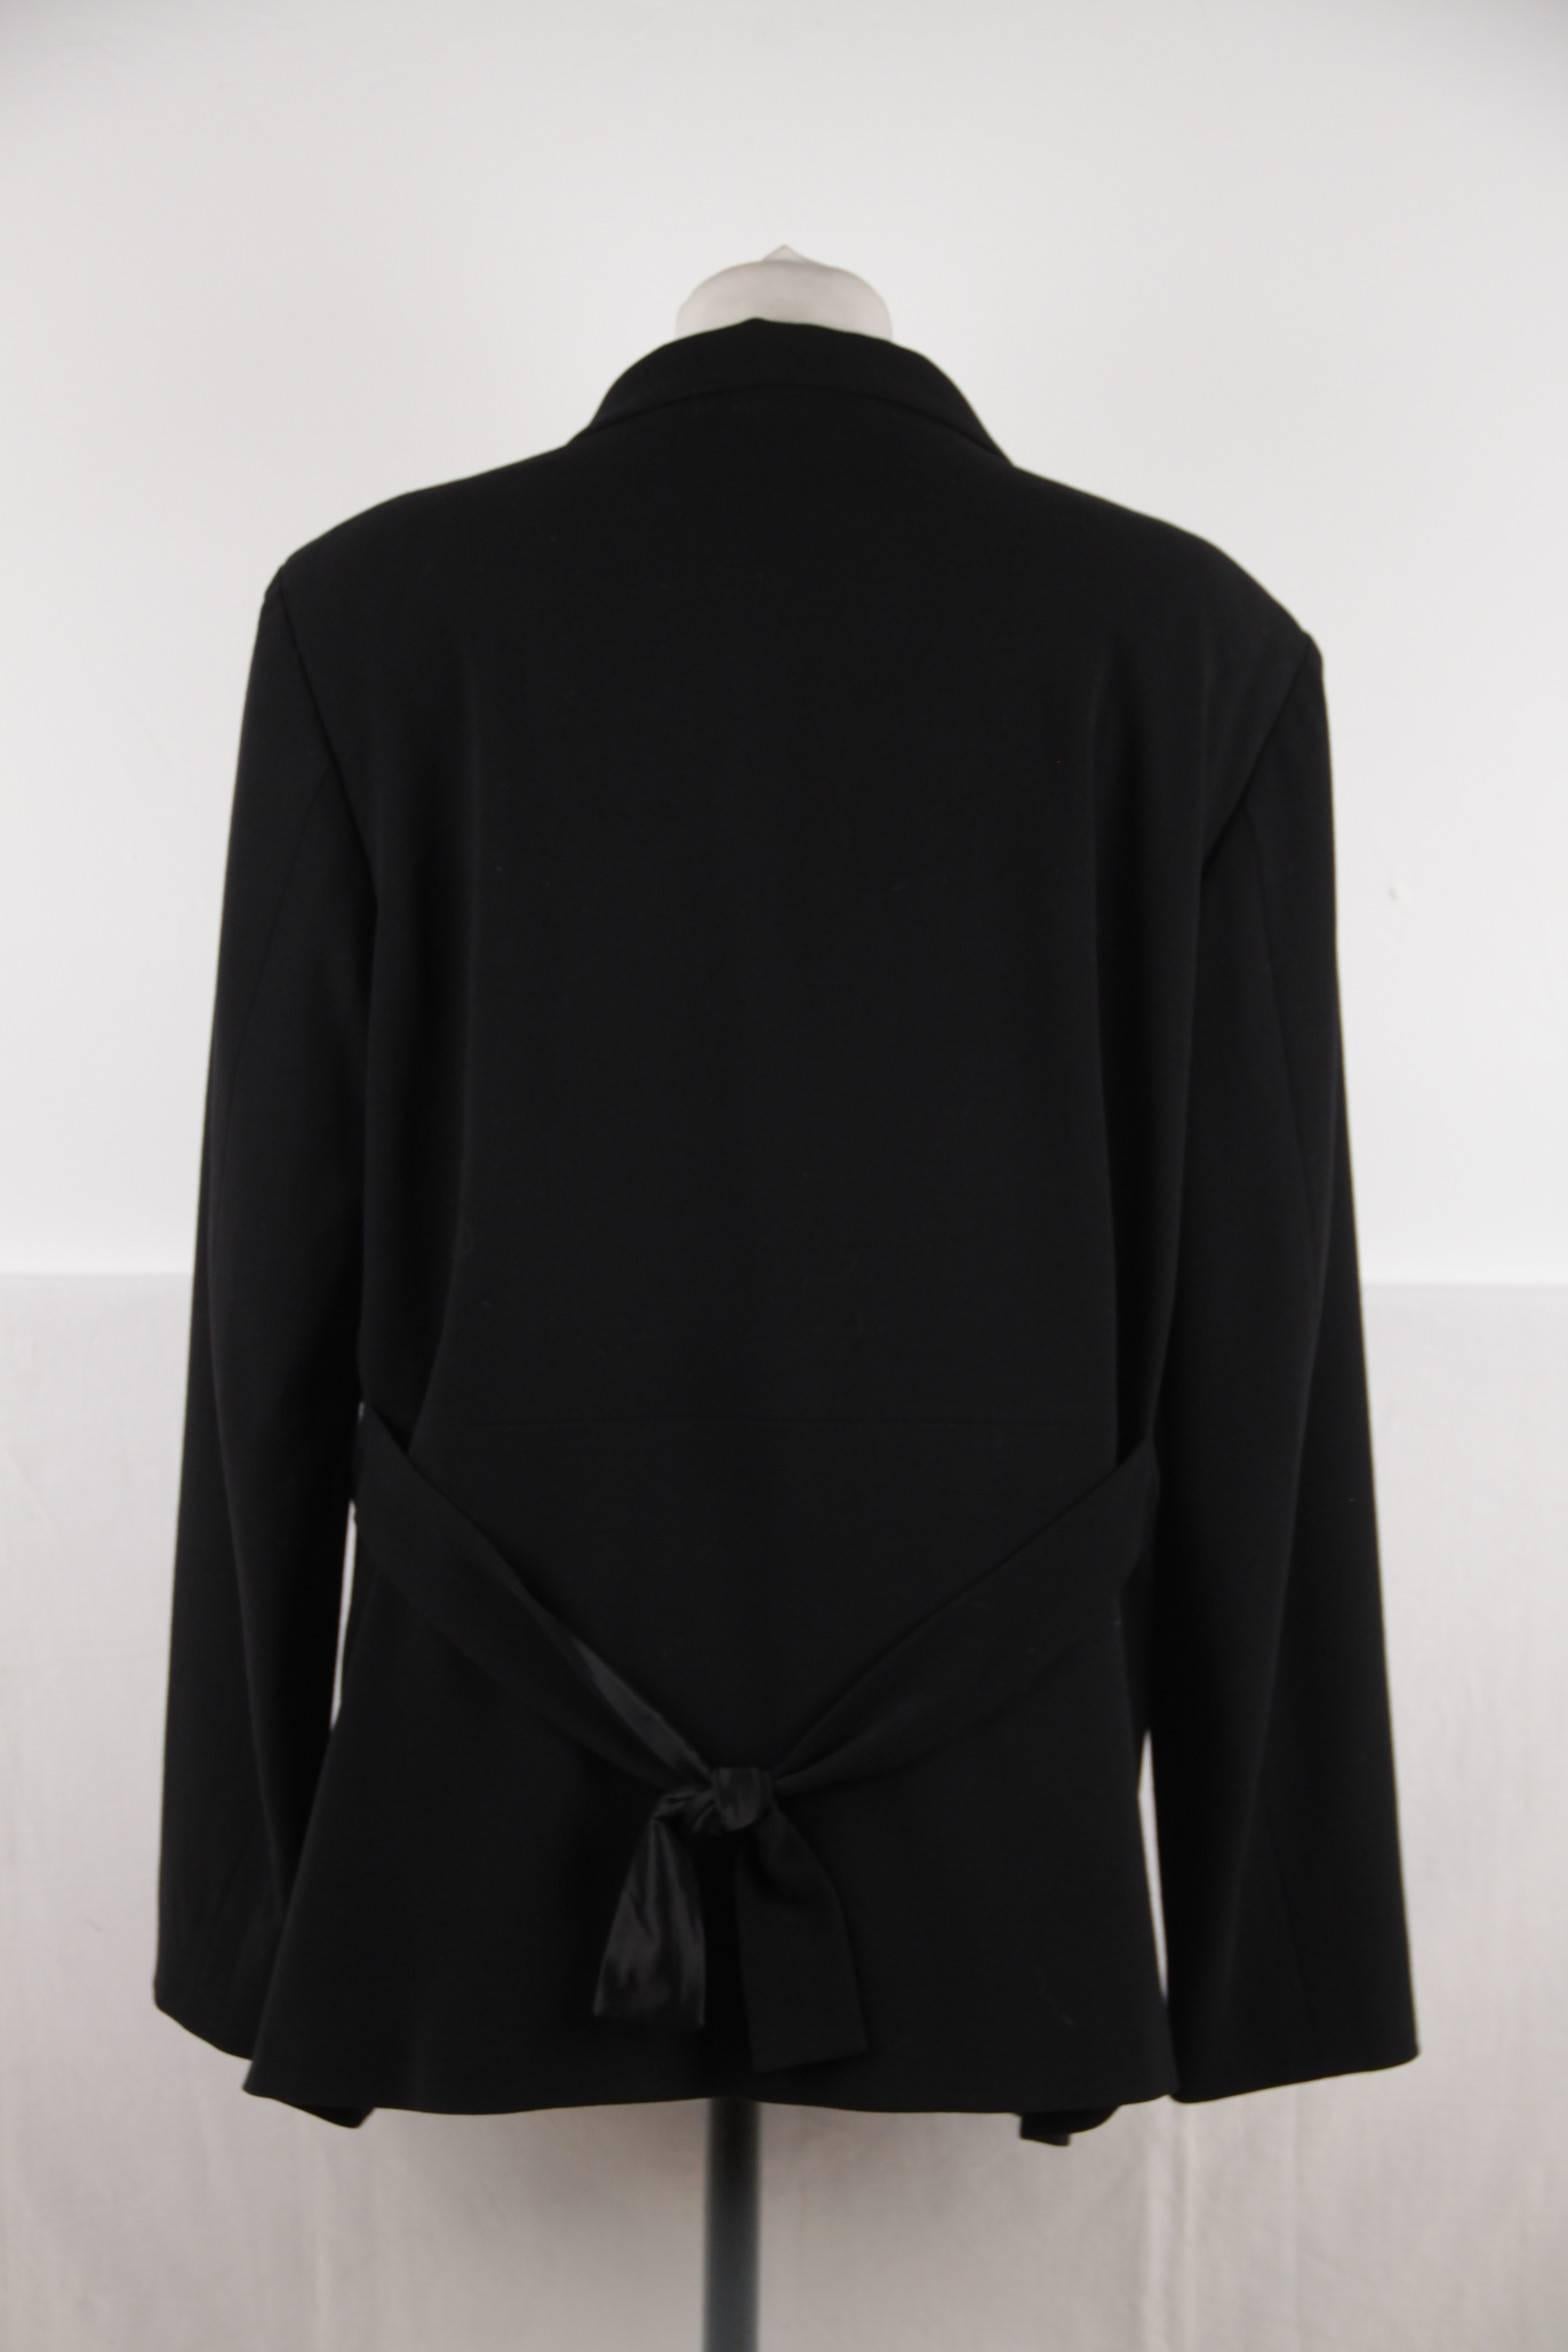 Women's JIL SANDER Black Virgin Wool BLAZER Jacket SIZE 44